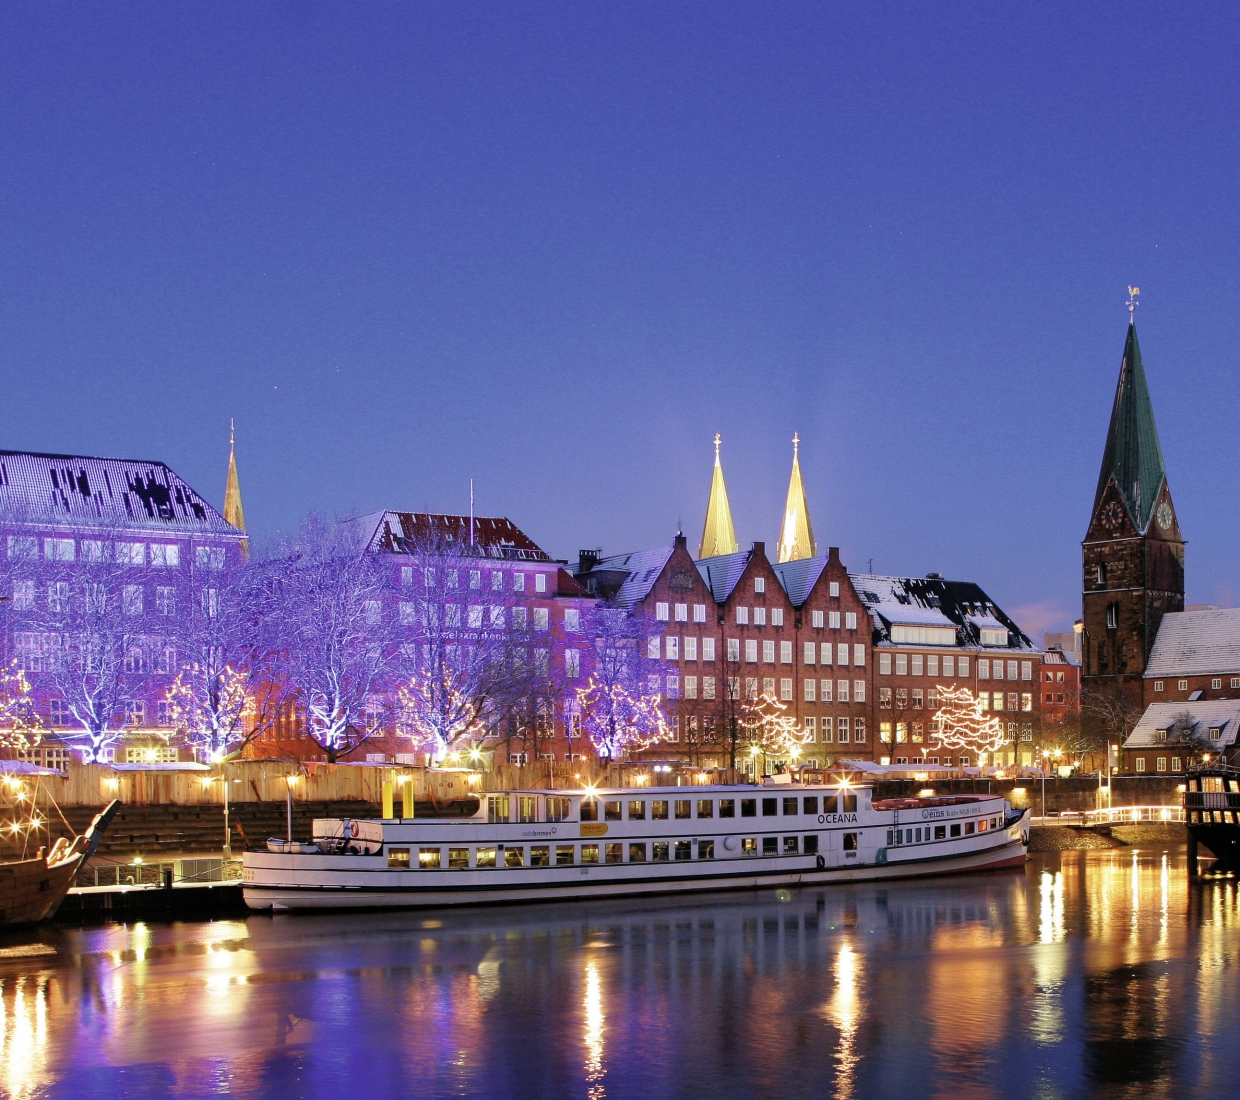 Seleção dos melhores e mais bonitos hotéis e casas de férias na Região de Bremen